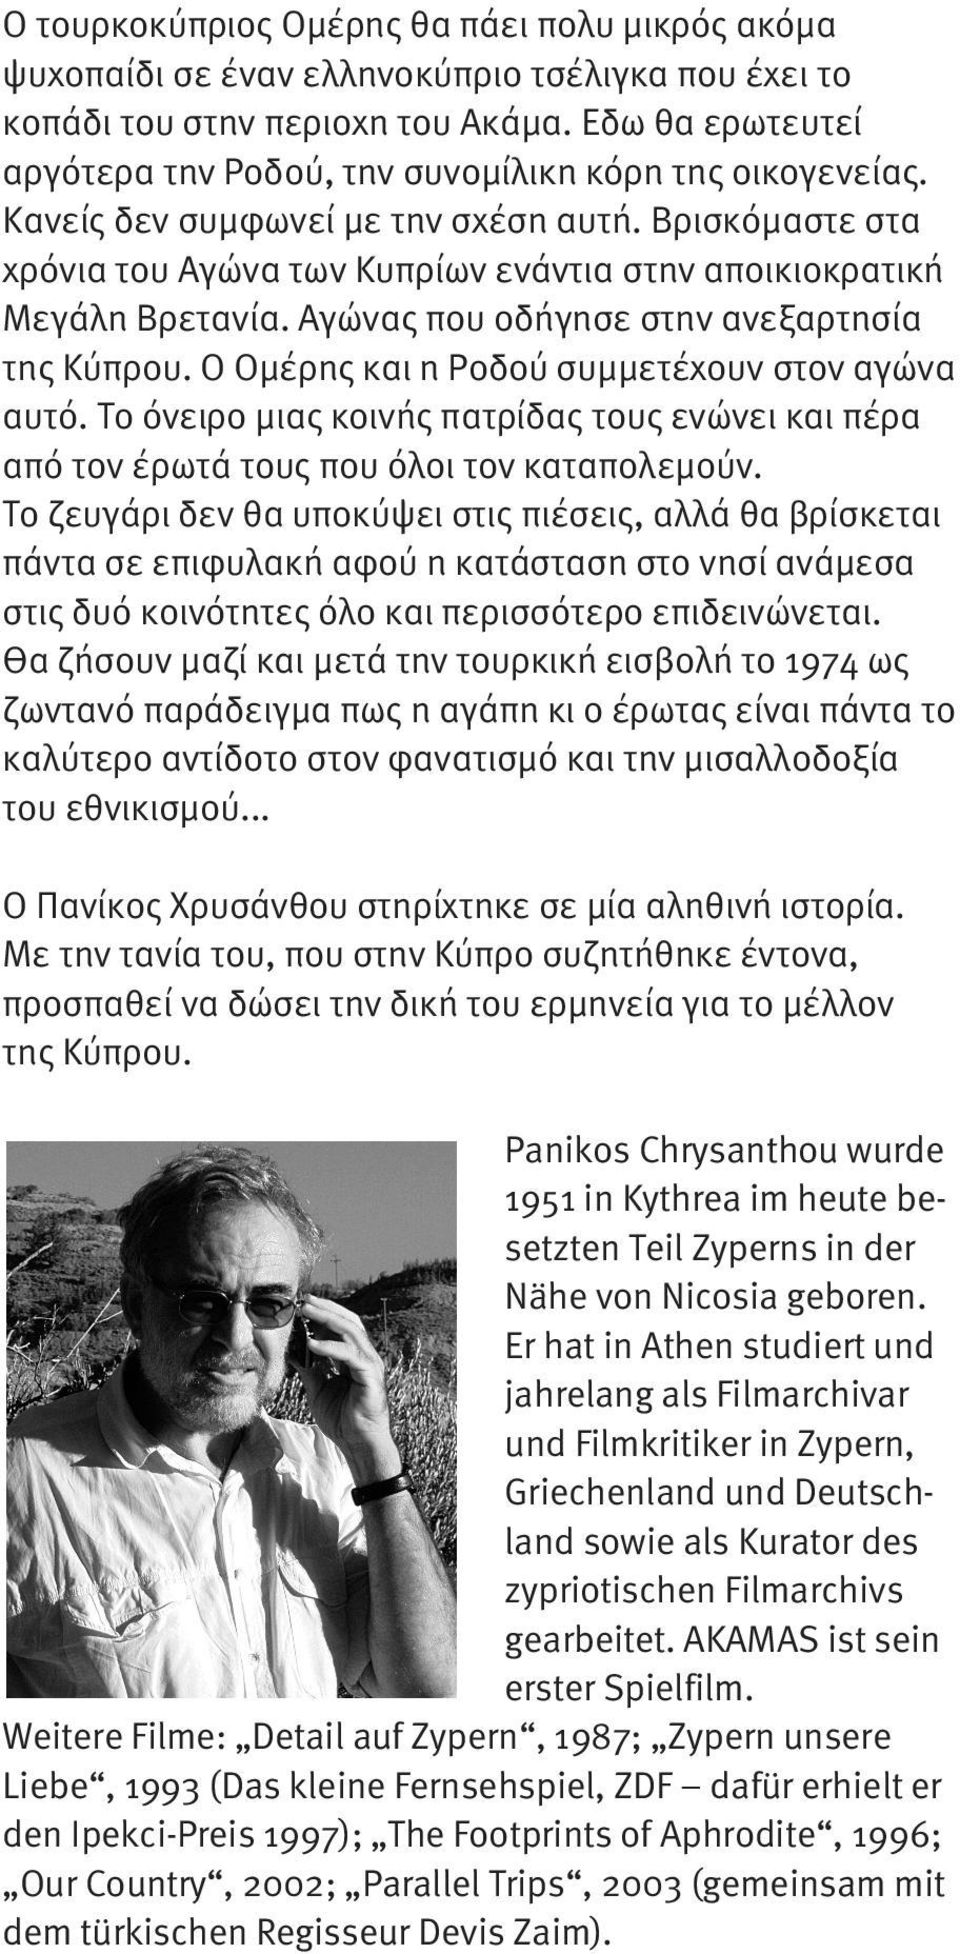 Βρισκόµαστε στα χρόνια του Αγώνα των Κυπρίων ενάντια στην αποικιοκρατική Μεγάλη Βρετανία. Αγώνας που οδήγησε στην ανεξαρτησία της Κύπρου. Ο Οµέρης και η Ροδού συµµετέχουν στον αγώνα αυτό.